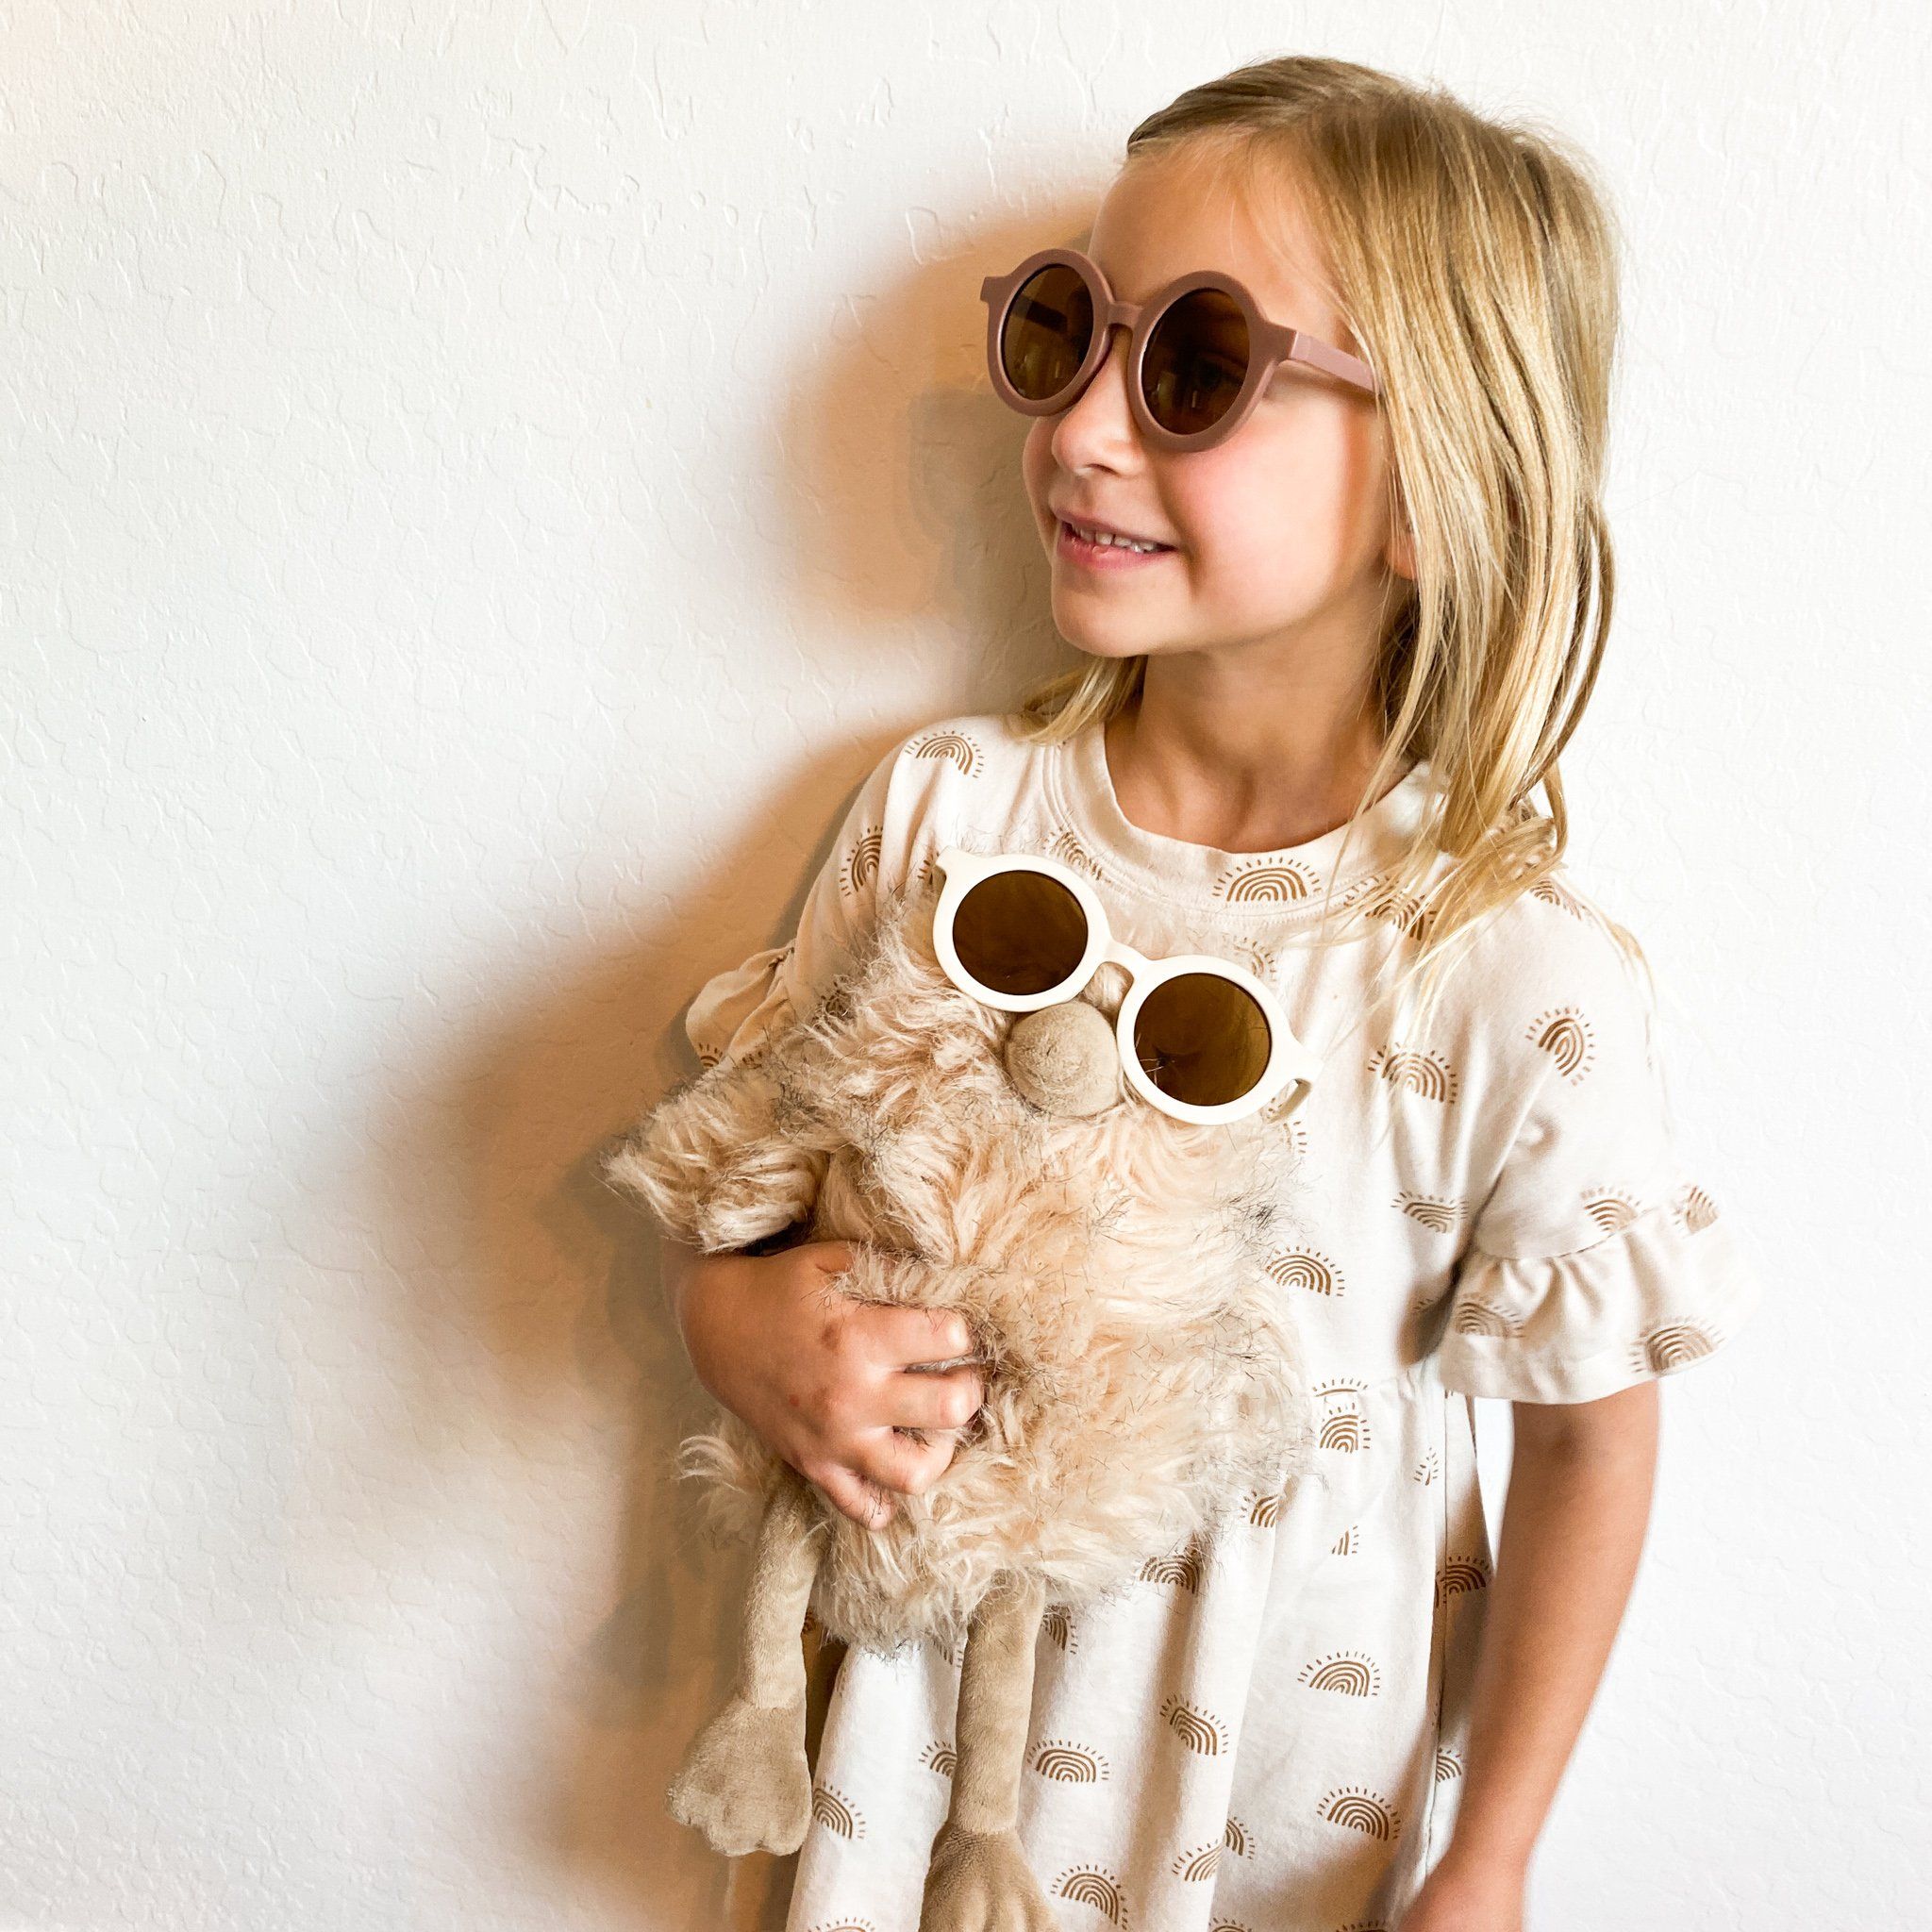 Sustainable UV400 Kids Sunglasses Slate Grey SUNGLASSES MKS MIMINOO 